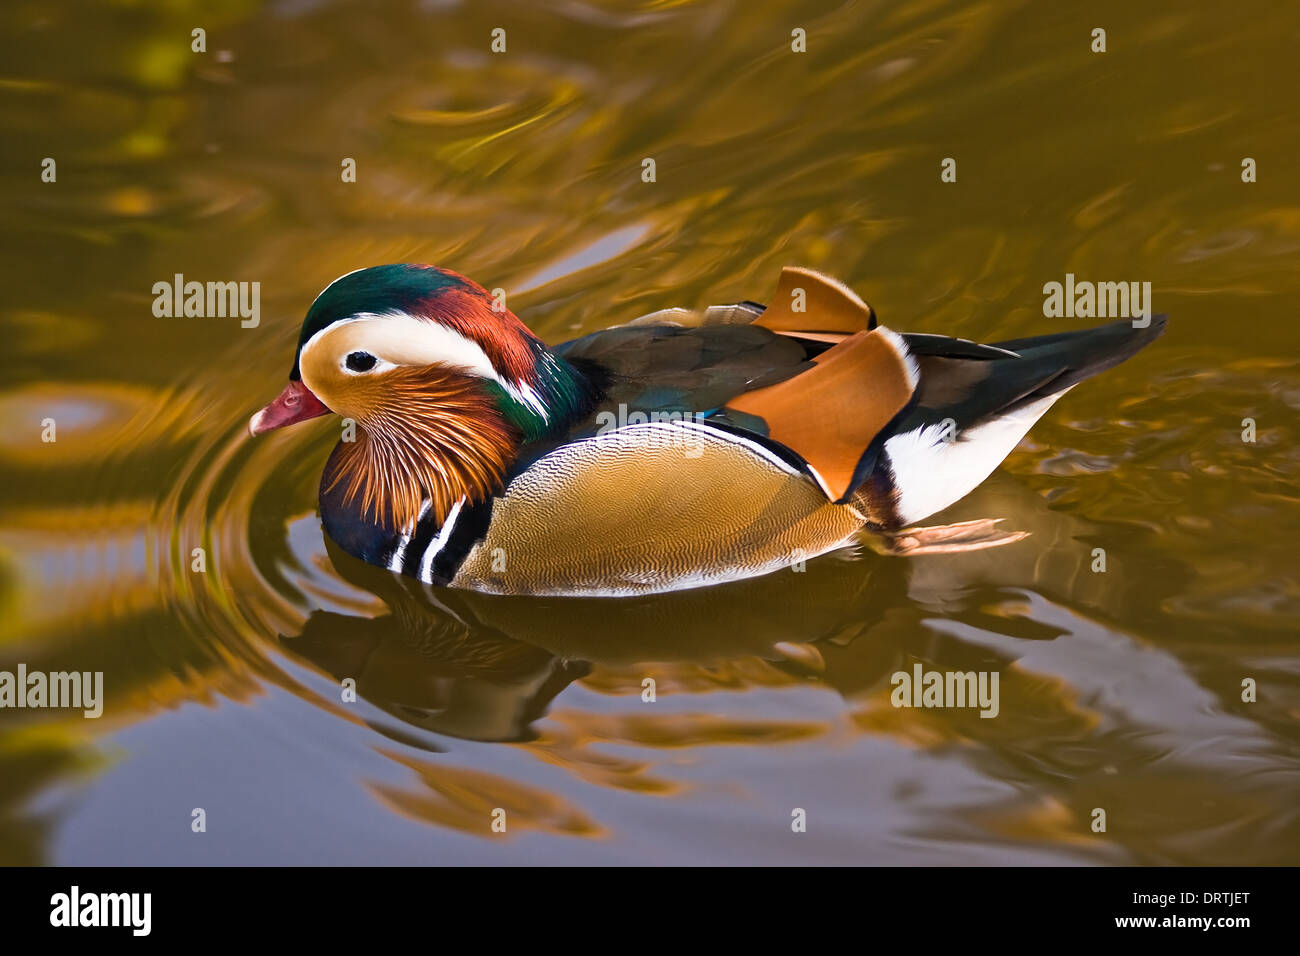 Canard Mandarin mâle nageant dans l'eau d'or Banque D'Images